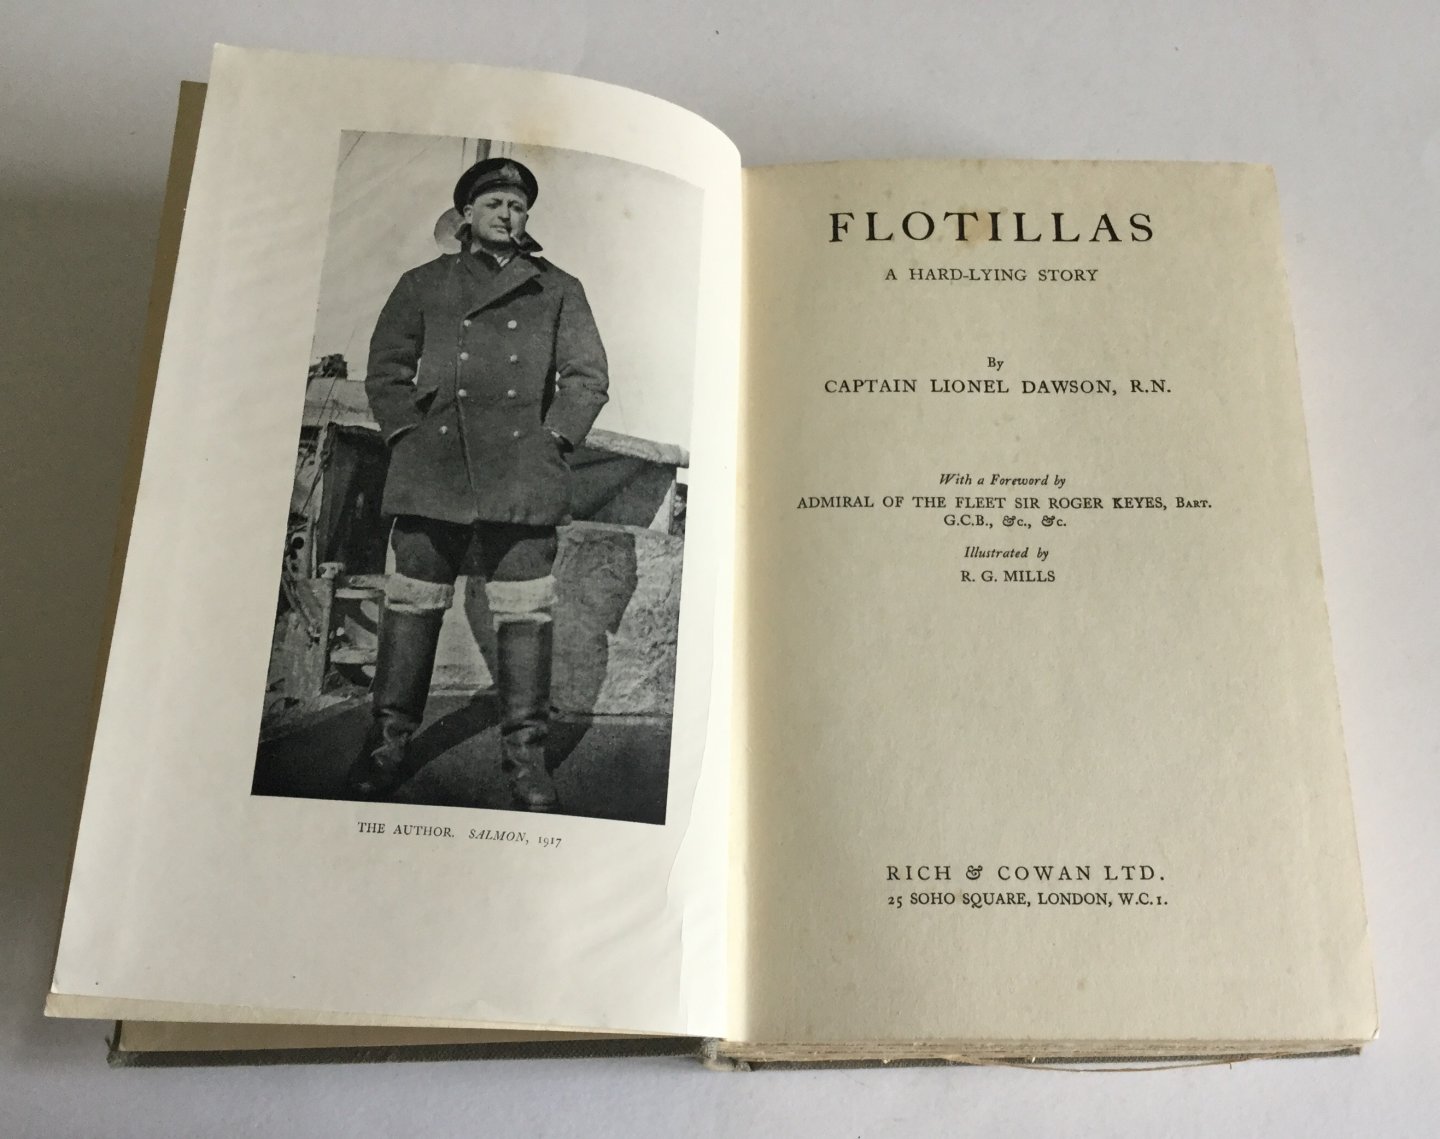 Lionel Dawson (Author), R. G. Mills (Illustrator), Roger Keyes (Foreword) - Flotillas: A Hard-Lying Story